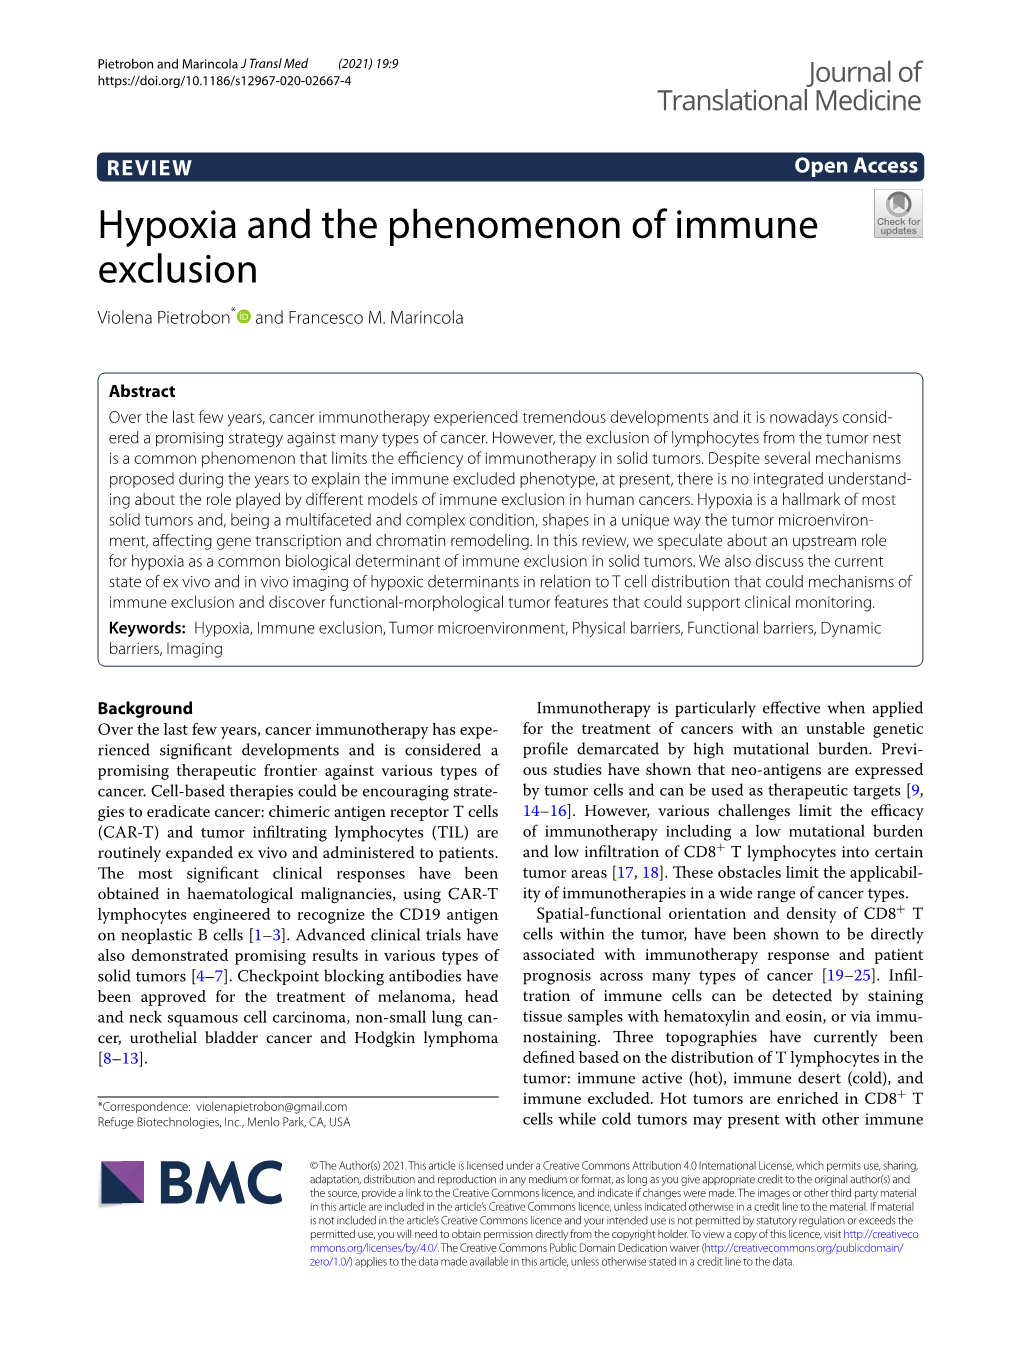 Hypoxia and the Phenomenon of Immune Exclusion Violena Pietrobon* and Francesco M